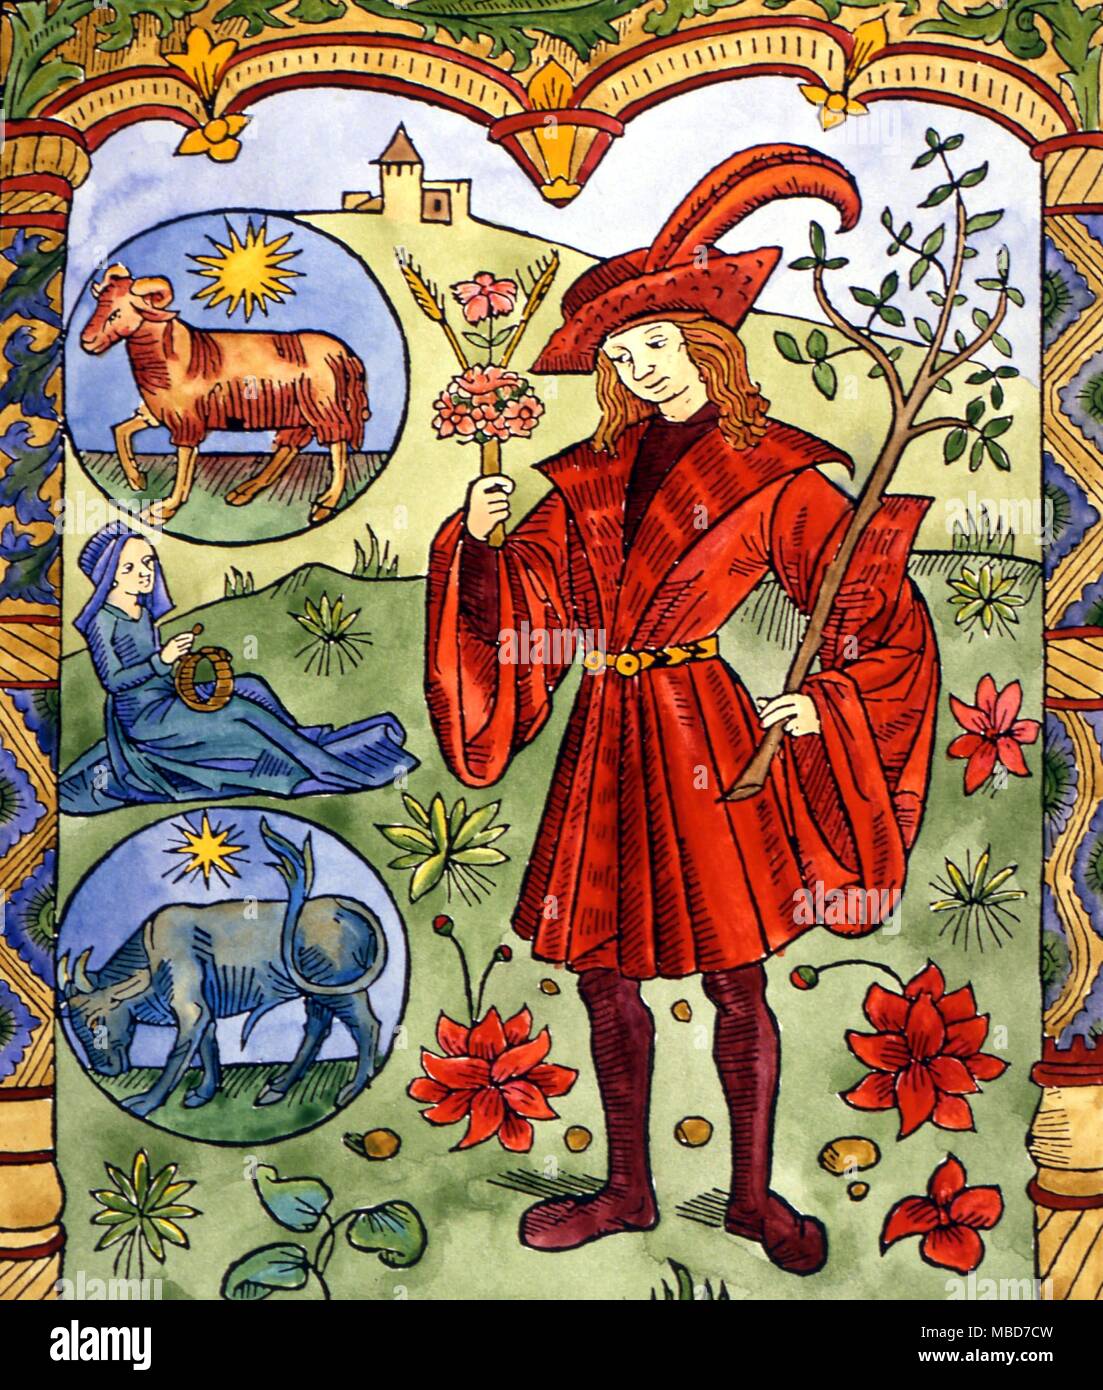 Spätmittelalterliche Holzschnitt von Shepherd Kalender, in dem die Zeichen Widder und Stier als Marker für das Frühjahr. Stockfoto